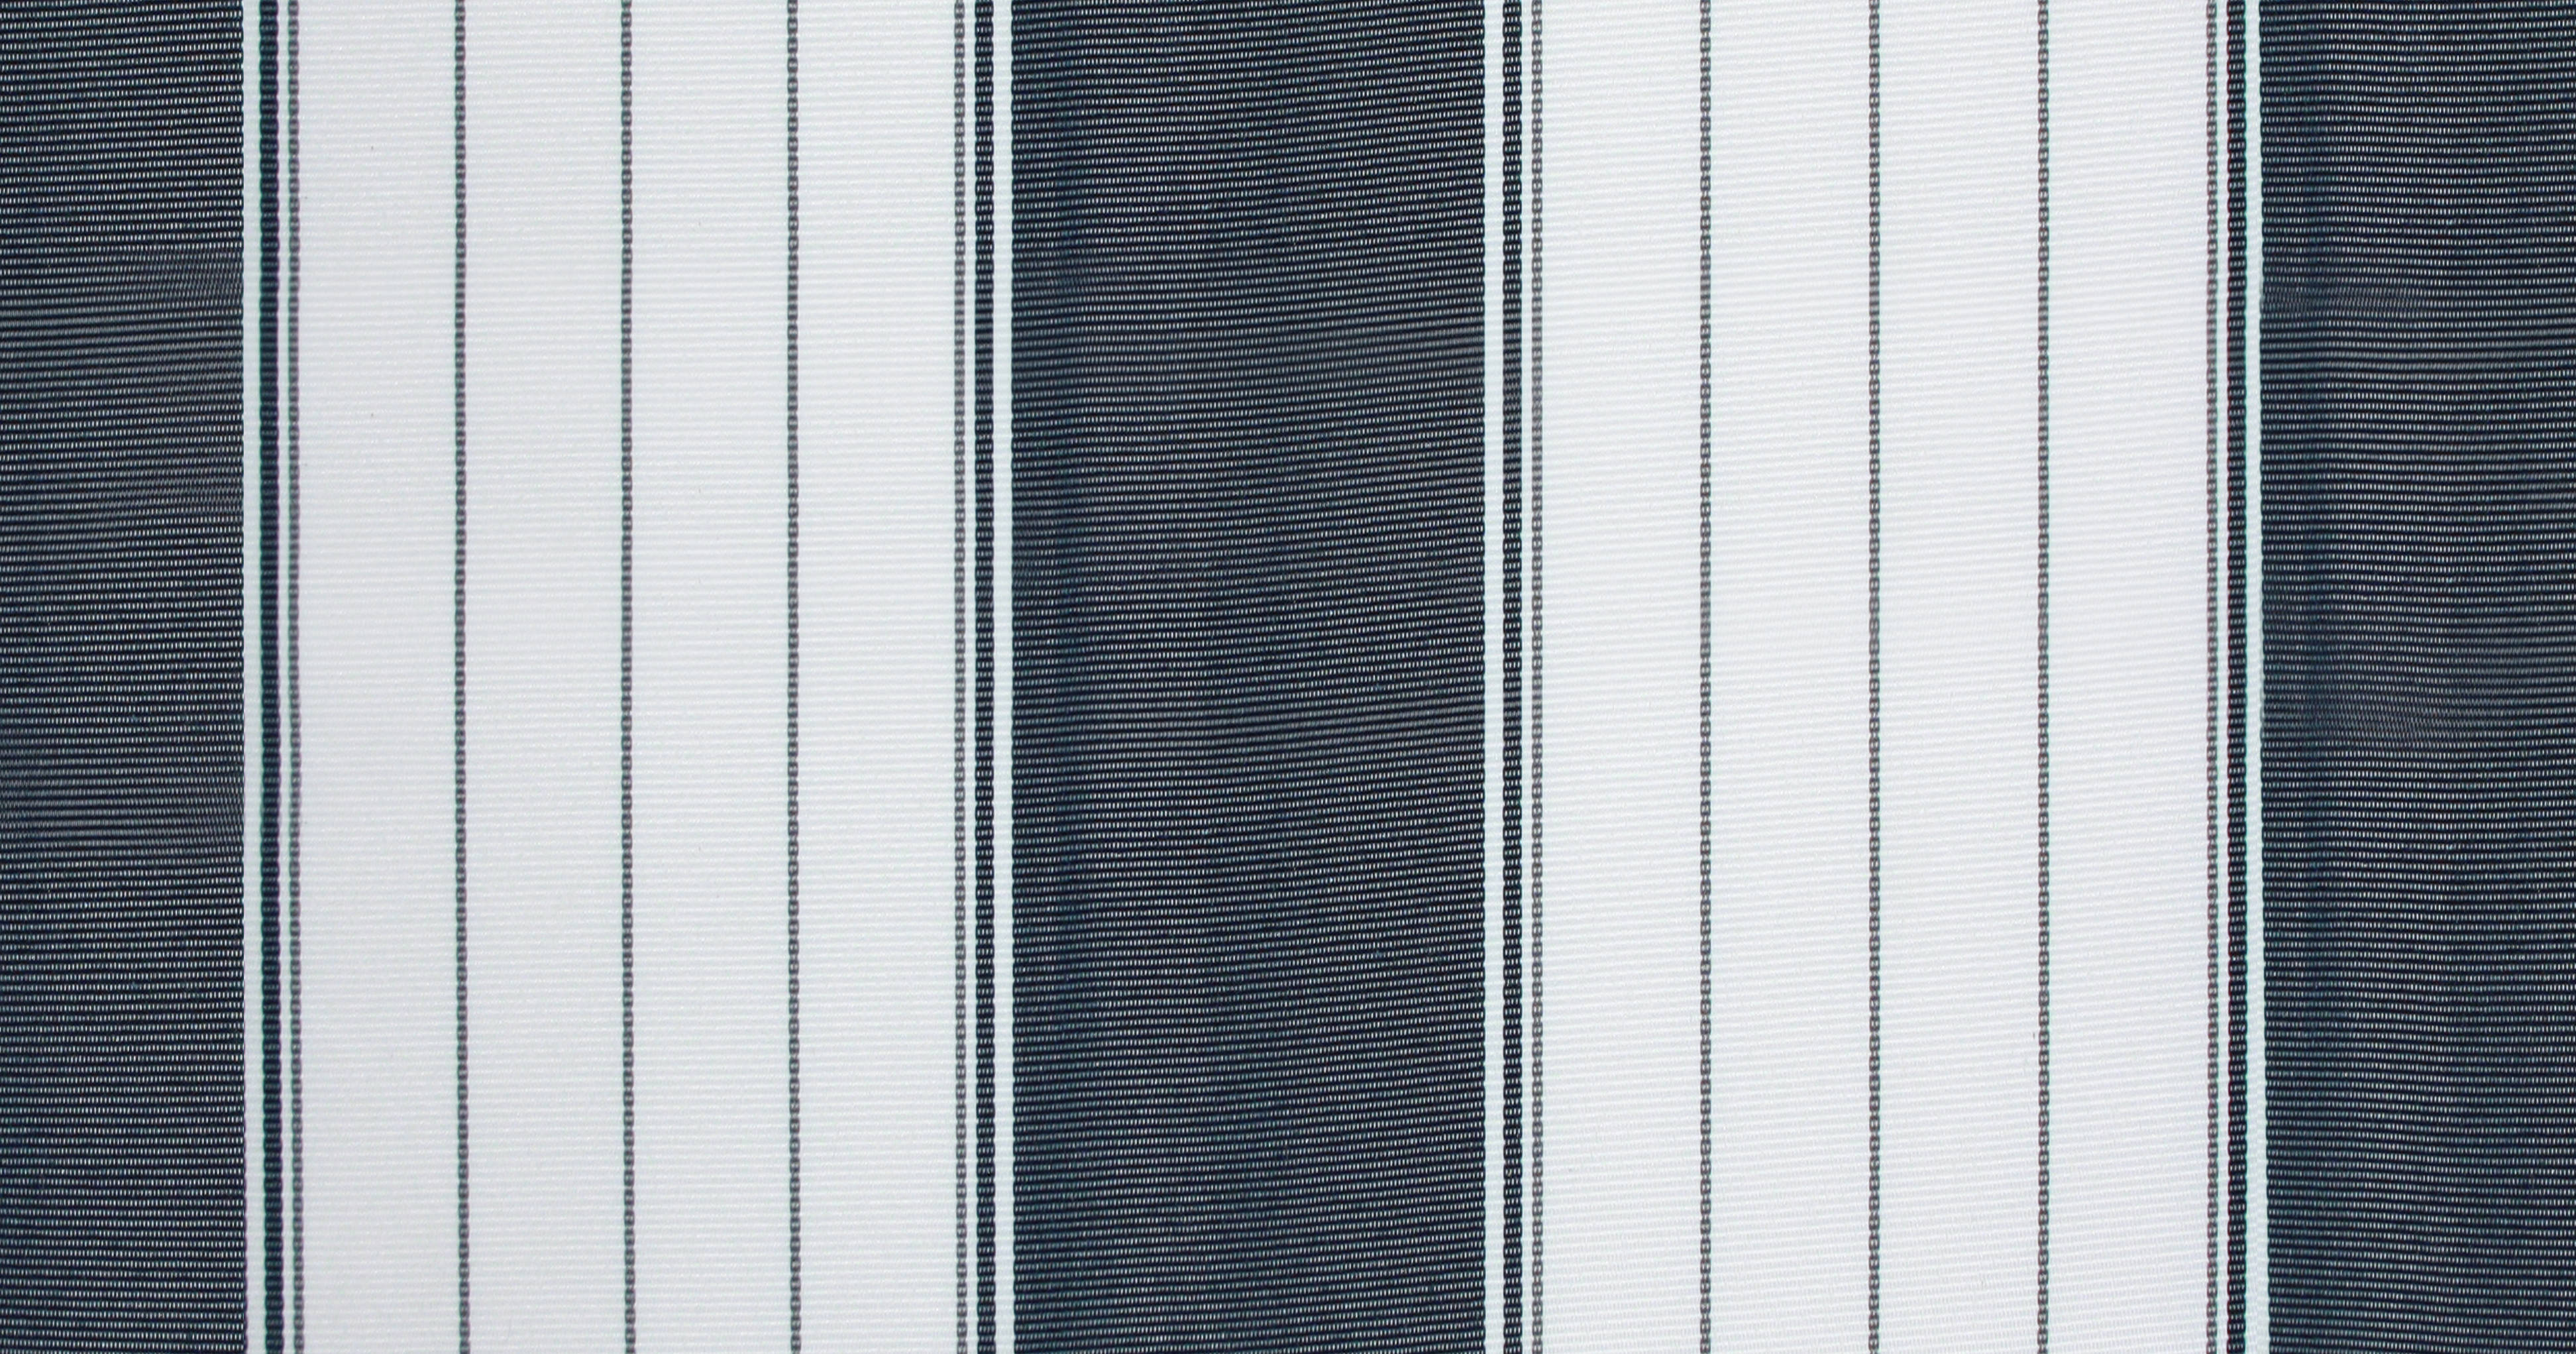 Klemm-Markise Föhr ohne Bohren blau-weiß